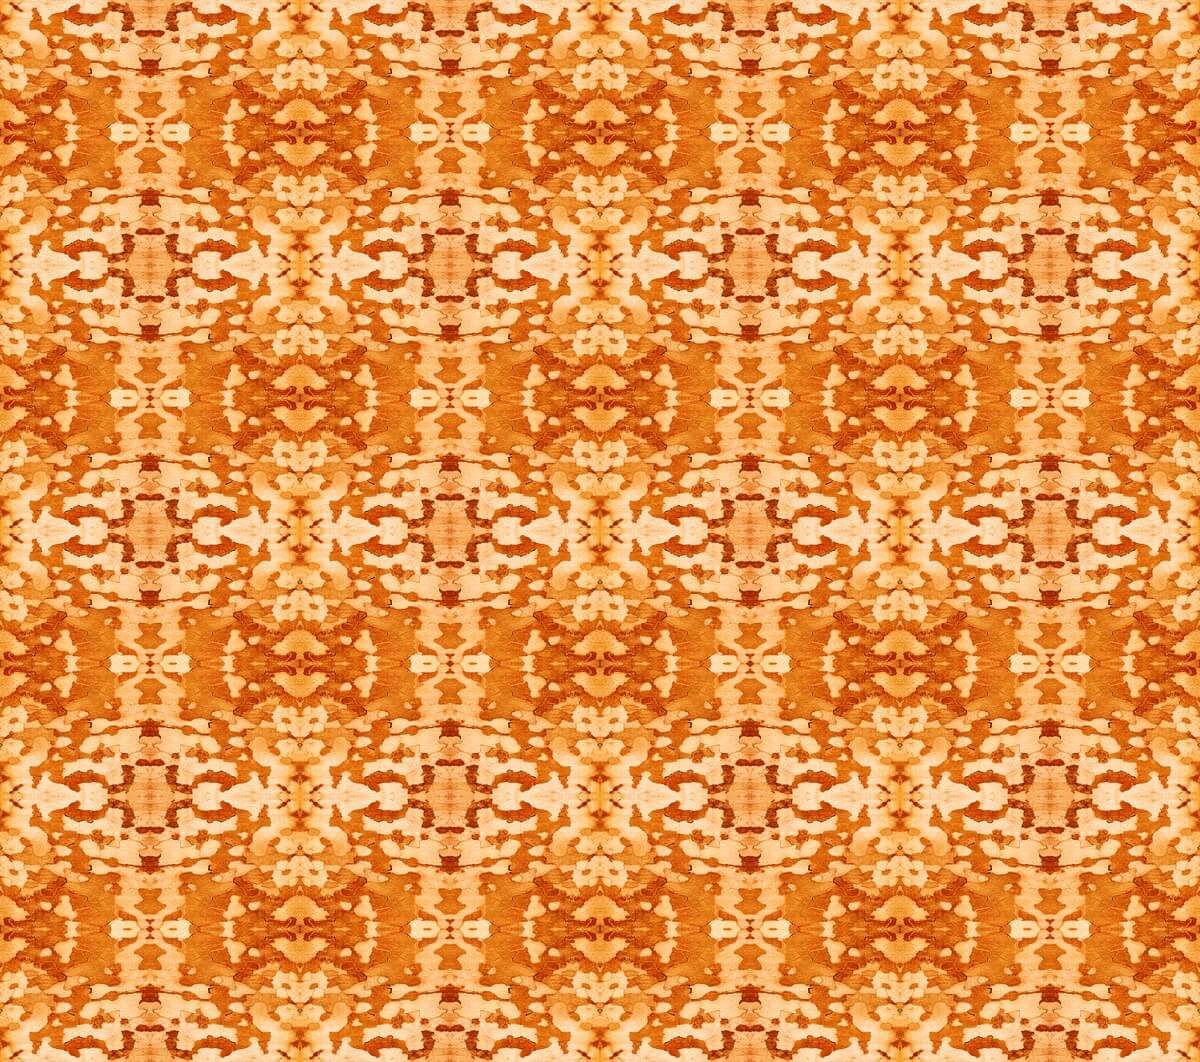 Park Bark pattern in orange